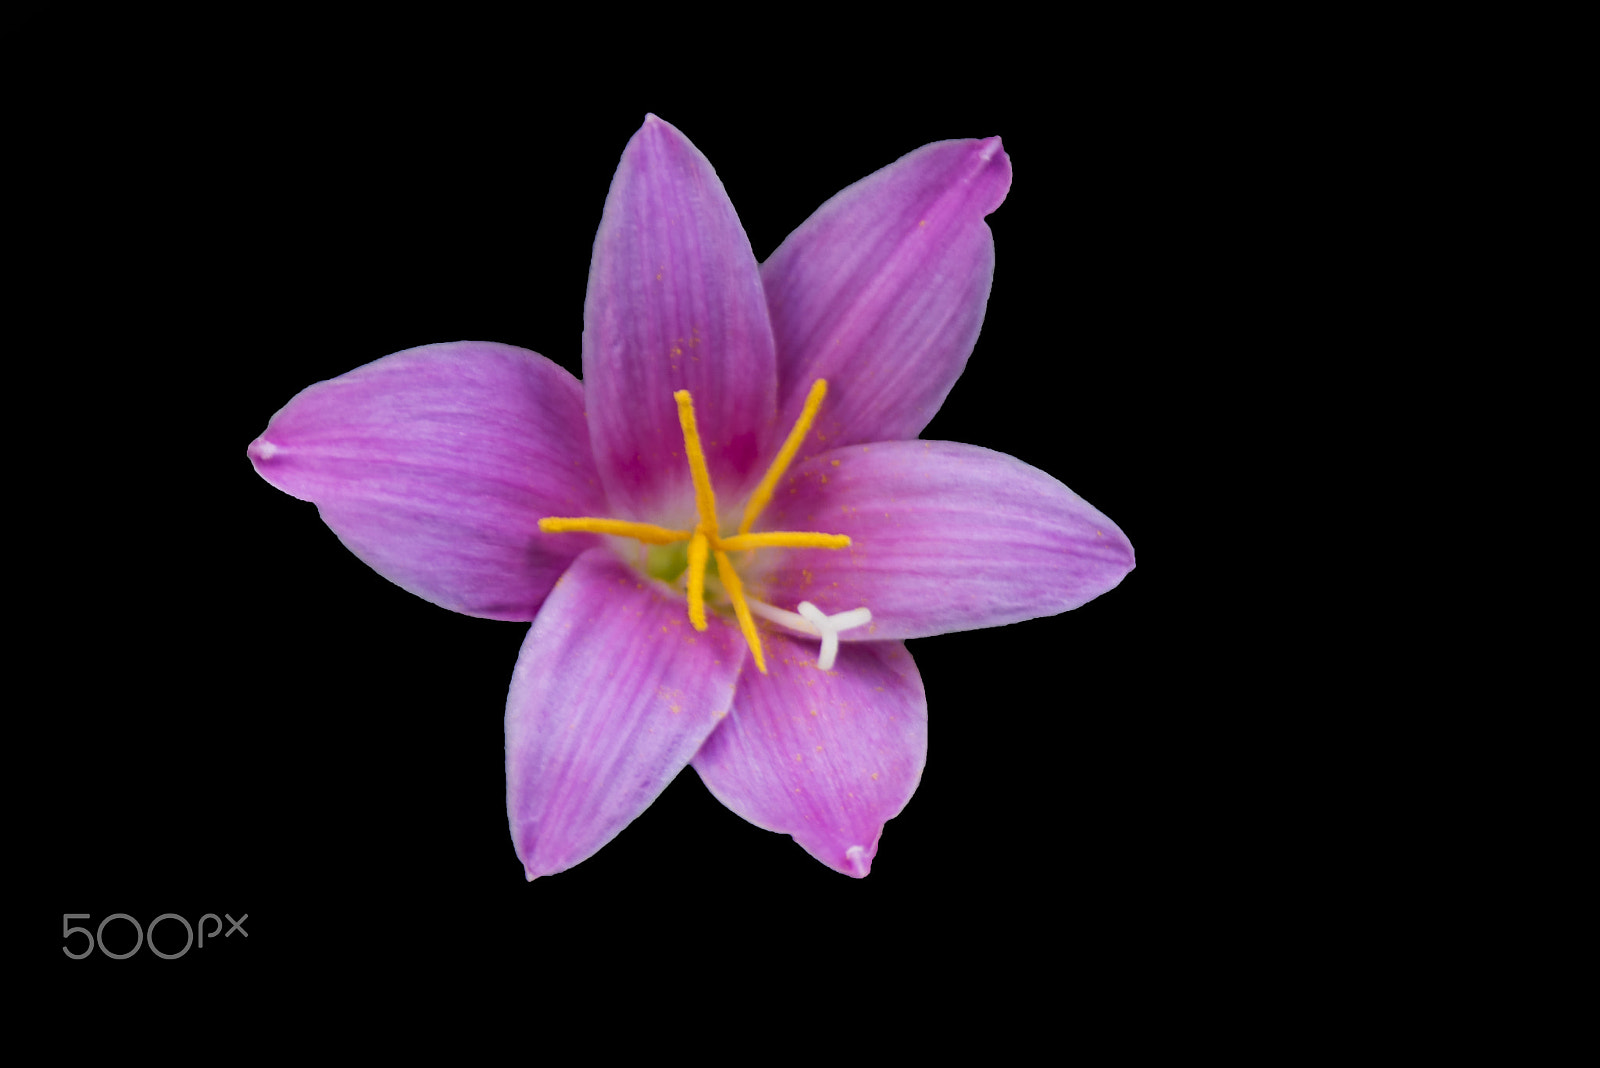 Nikon D810 sample photo. Zıptıkçı Çiçeği (zephyranthes) photography